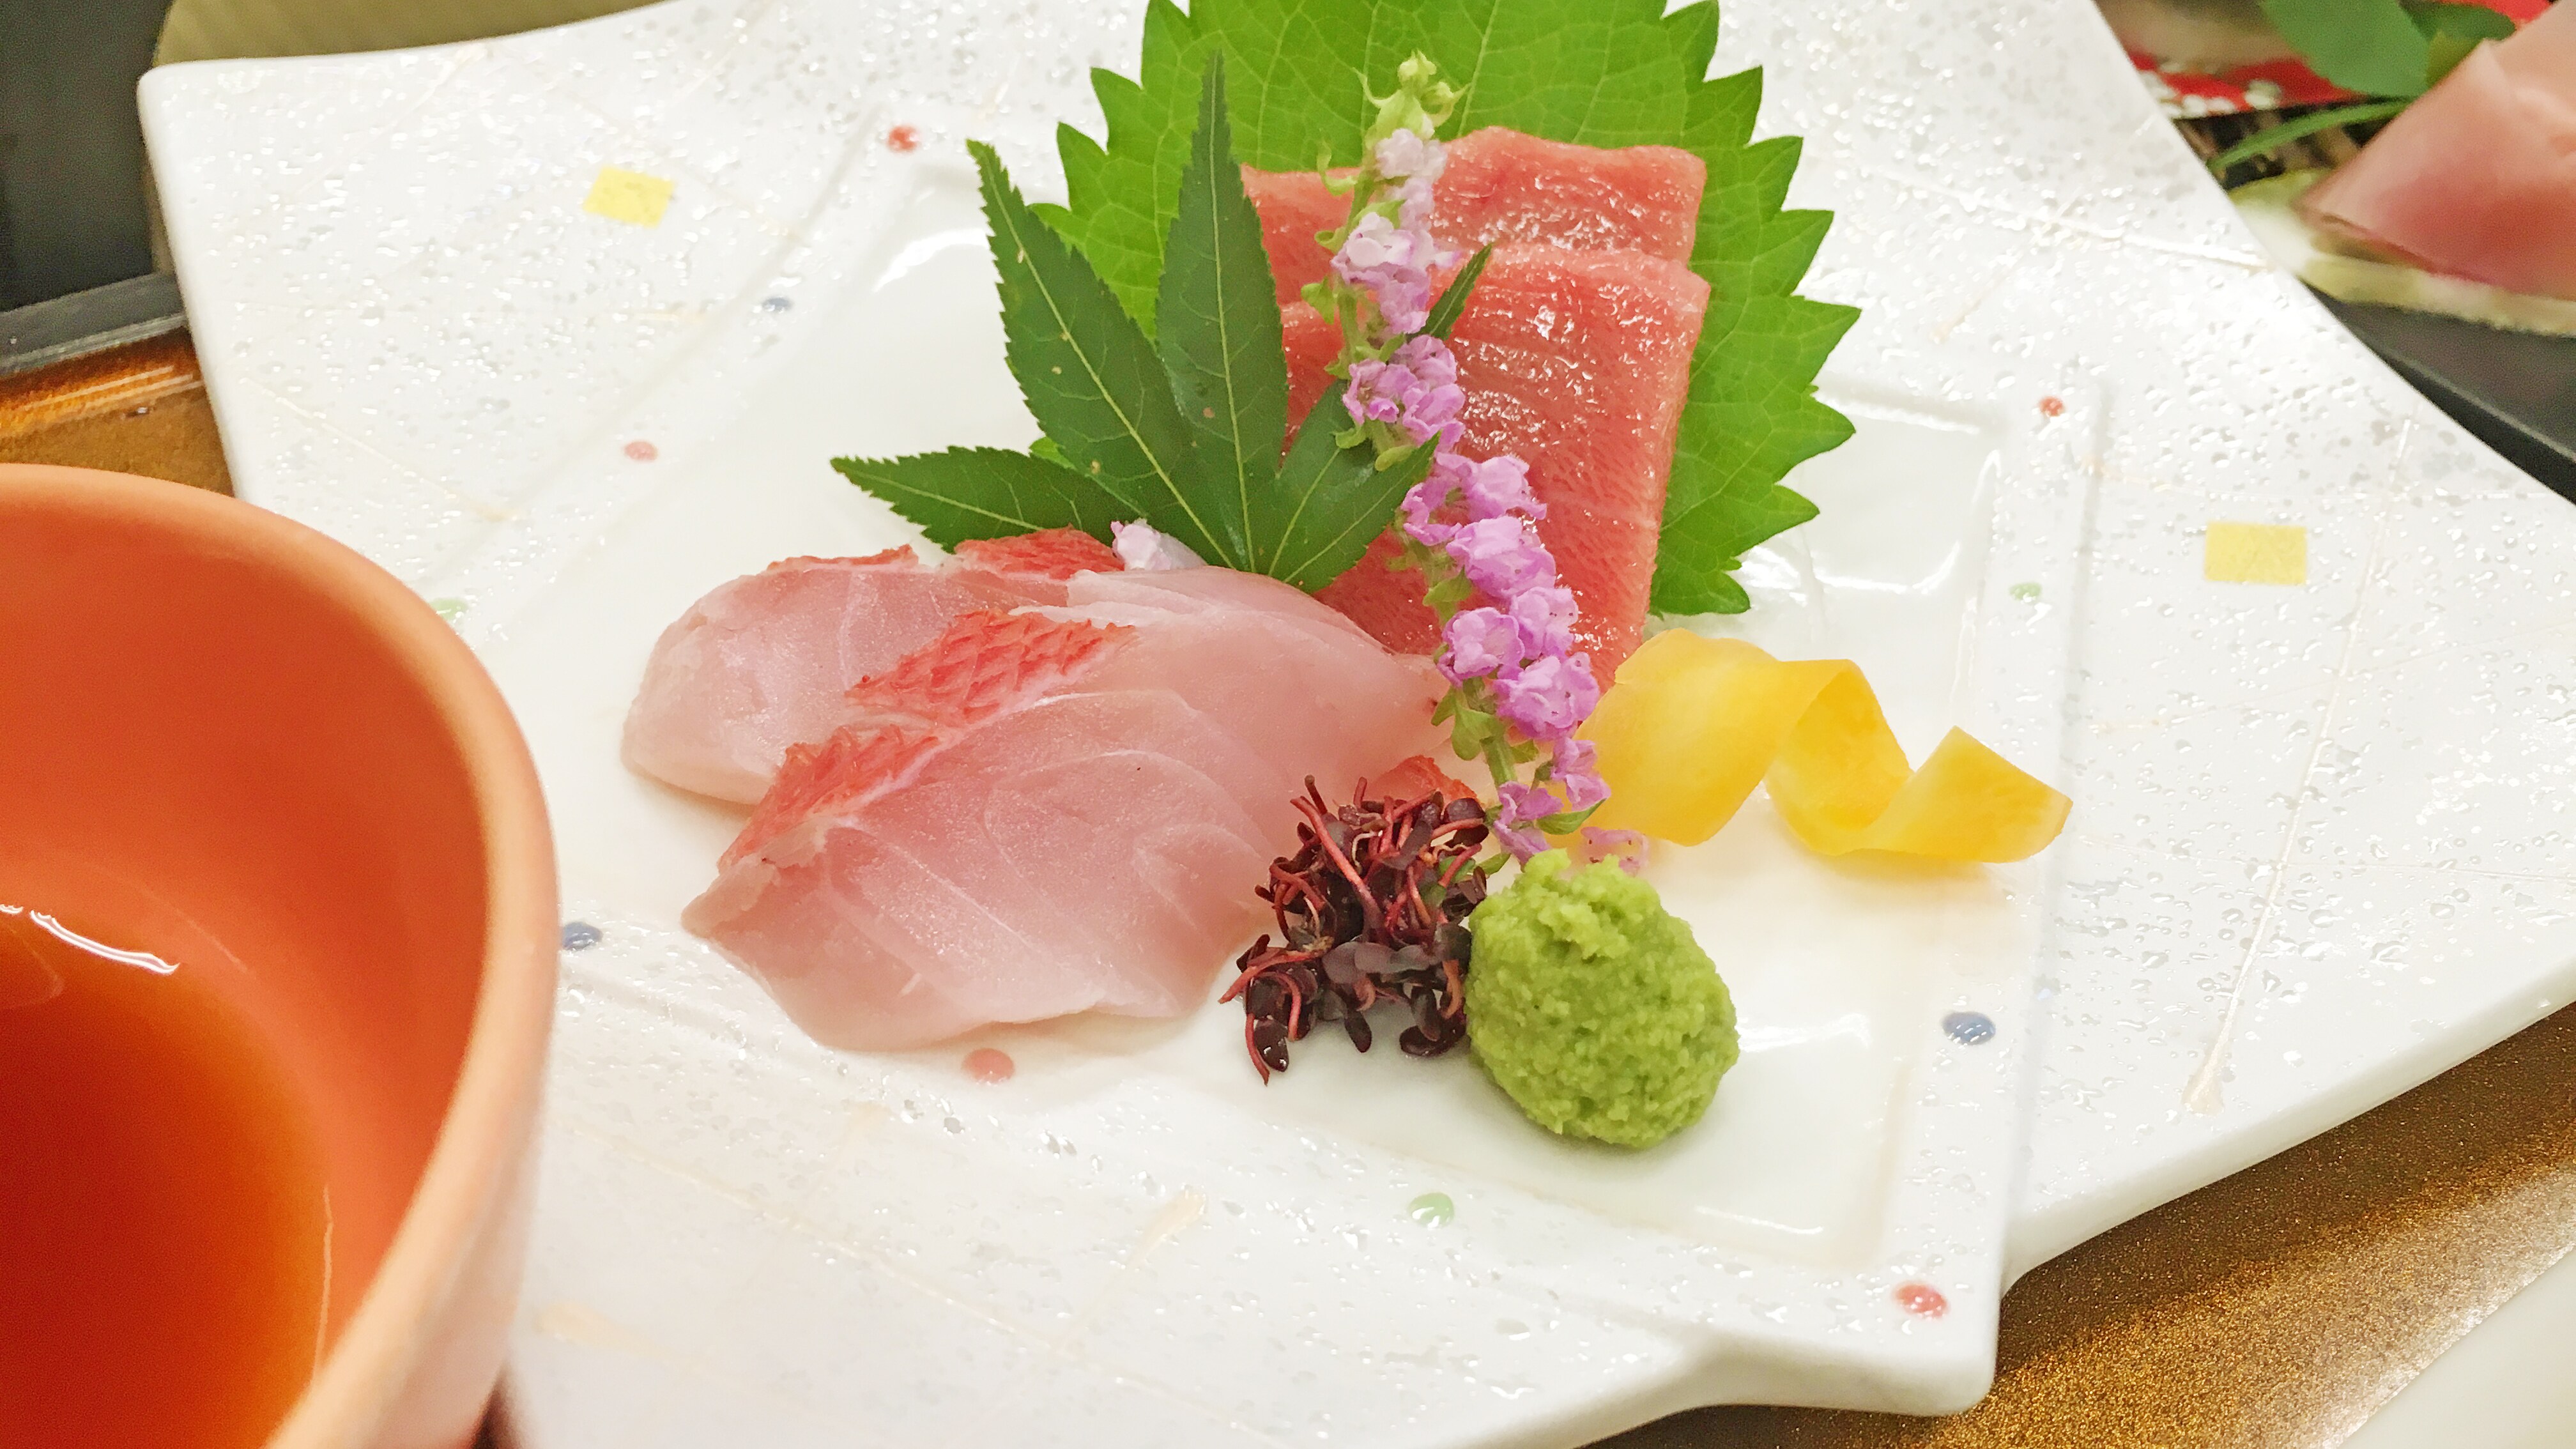 Meskipun ini adalah gunung, kami menawarkan sashimi yang dipilih dengan cermat oleh koki.